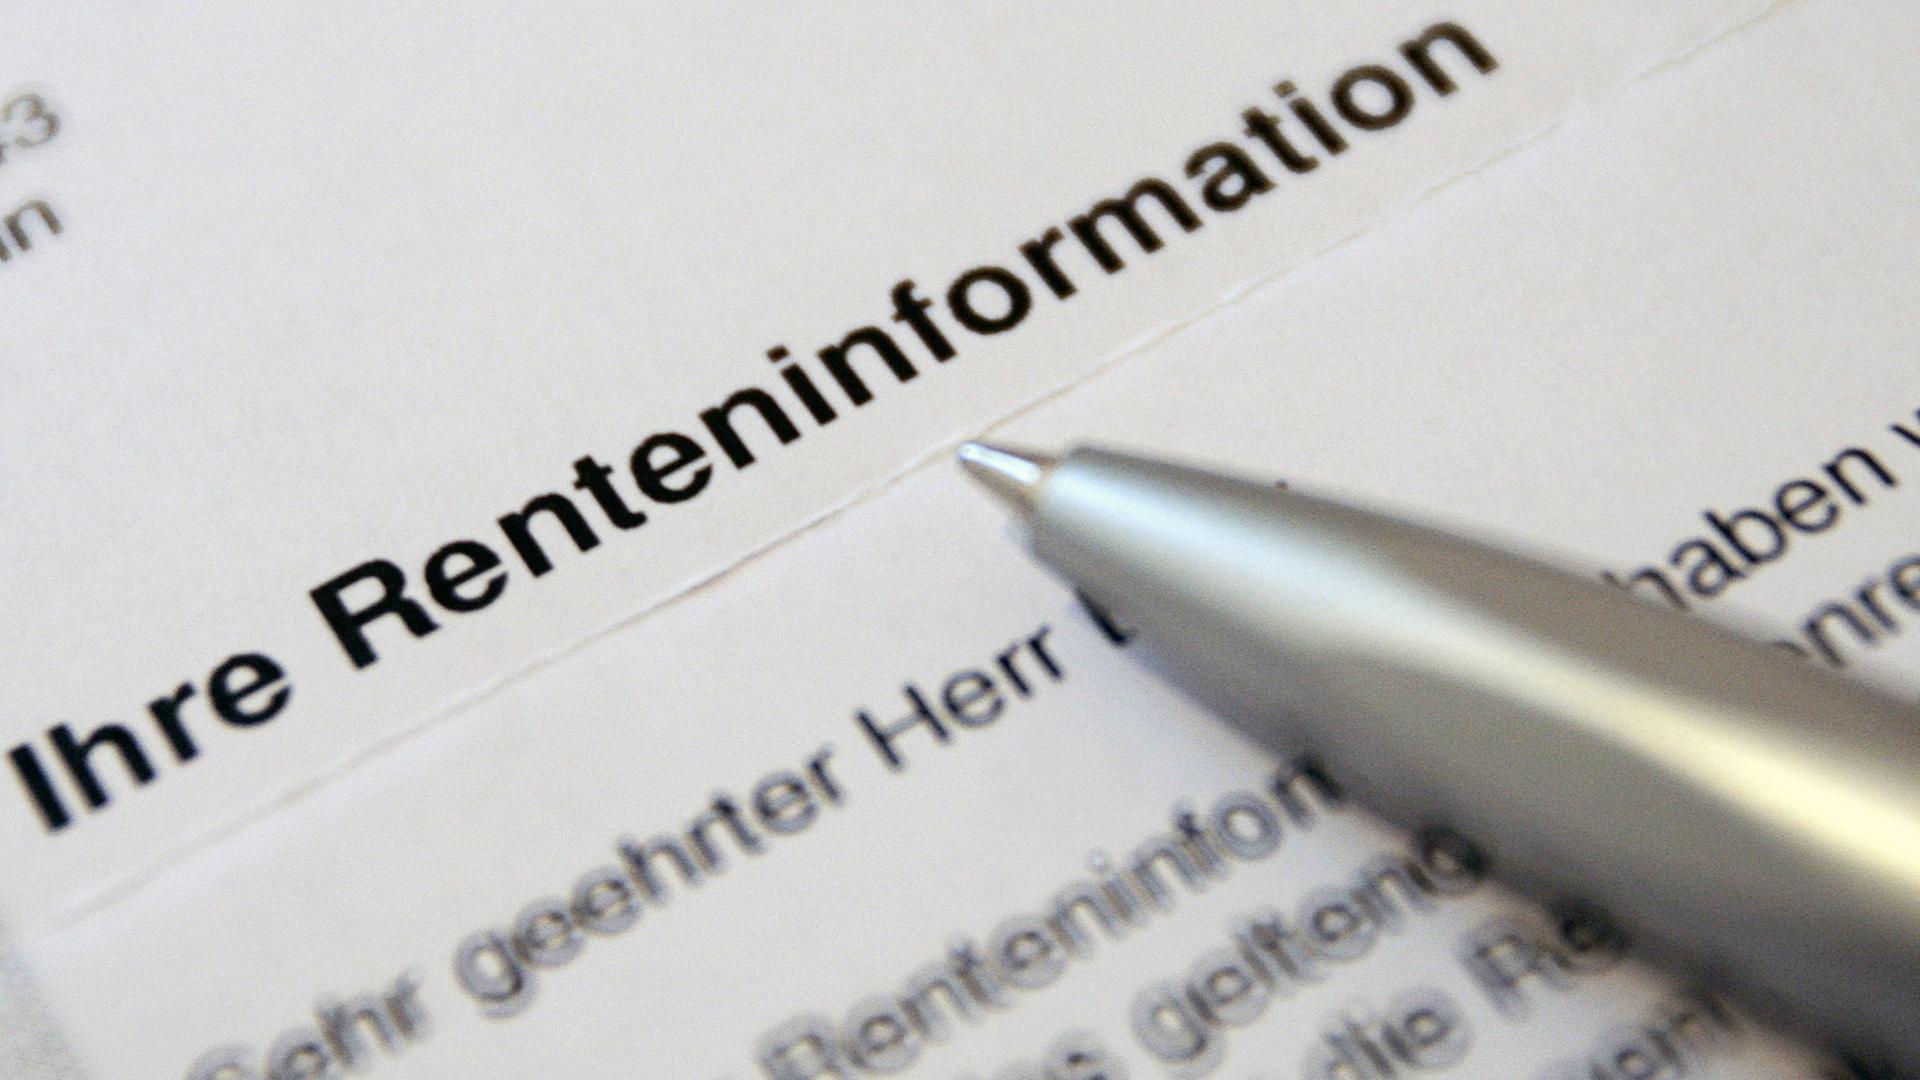 Ein Anschreiben der Deutschen Rentenversicherungsanstalt mit der Aufschrift "Ihre Renteninformation".